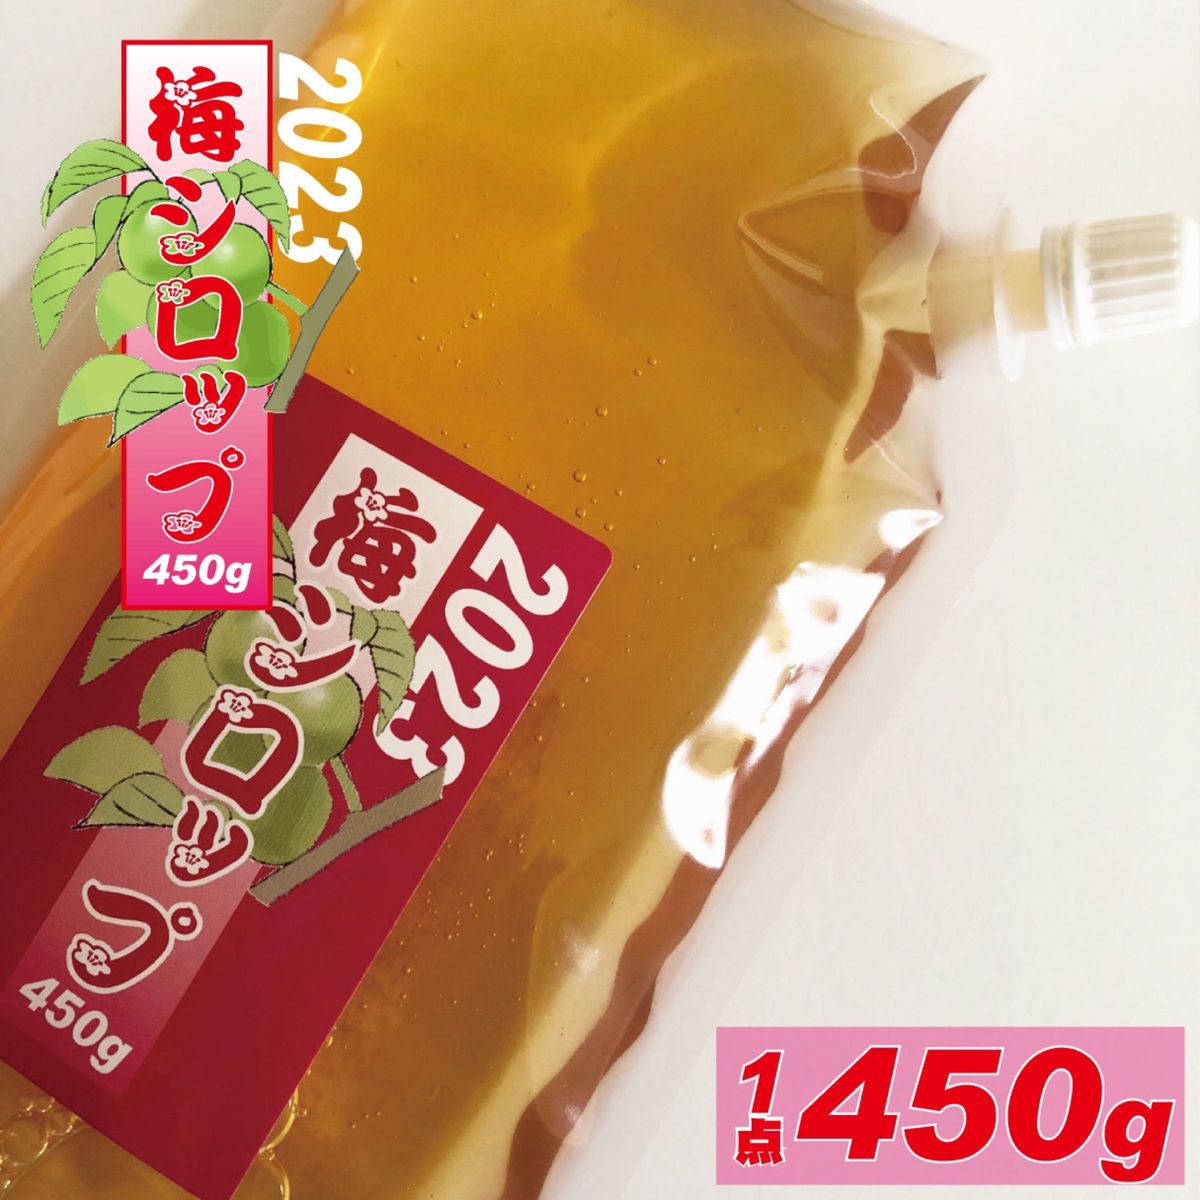 梅のいいとこと酸味たっぷり、用途多彩な梅シロップ450g。